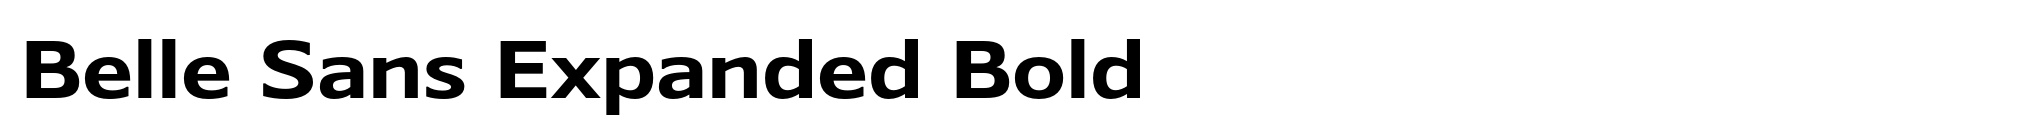 Belle Sans Expanded Bold image